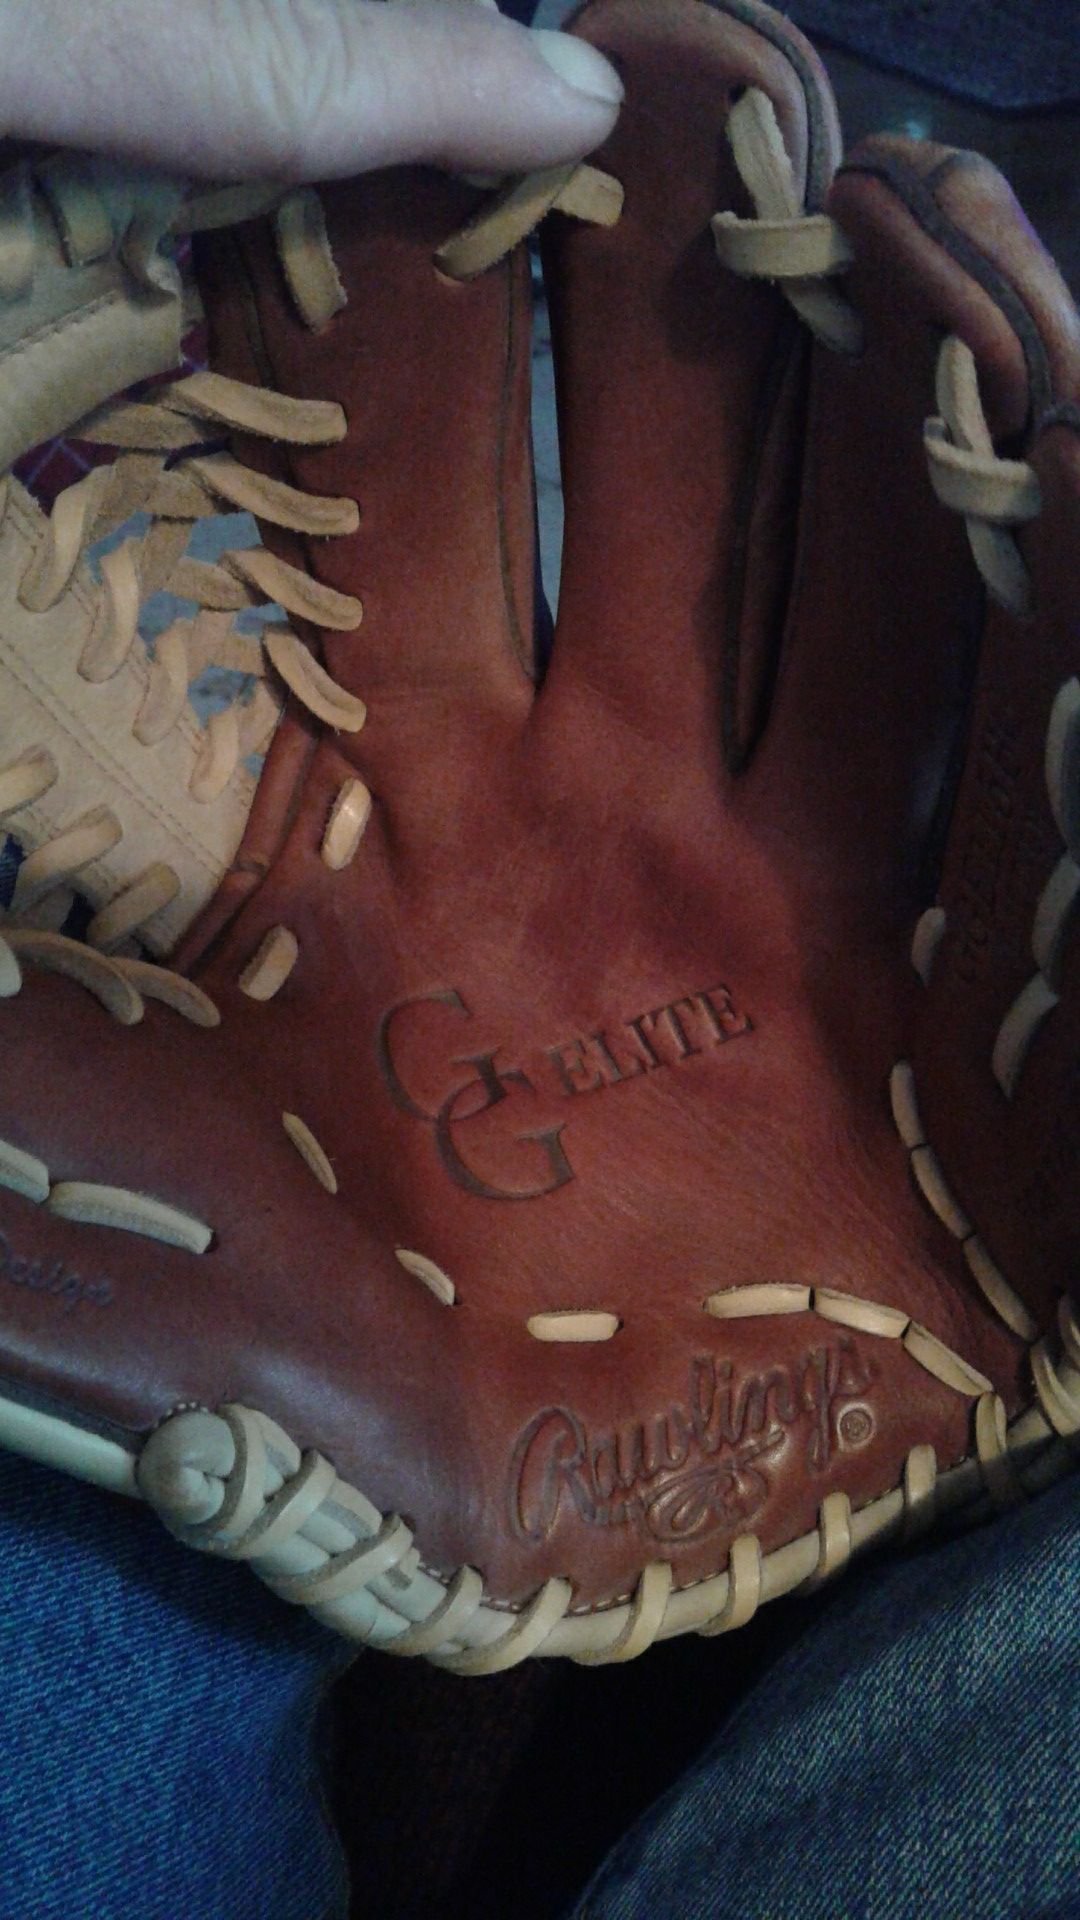 Rawlings baseball glove